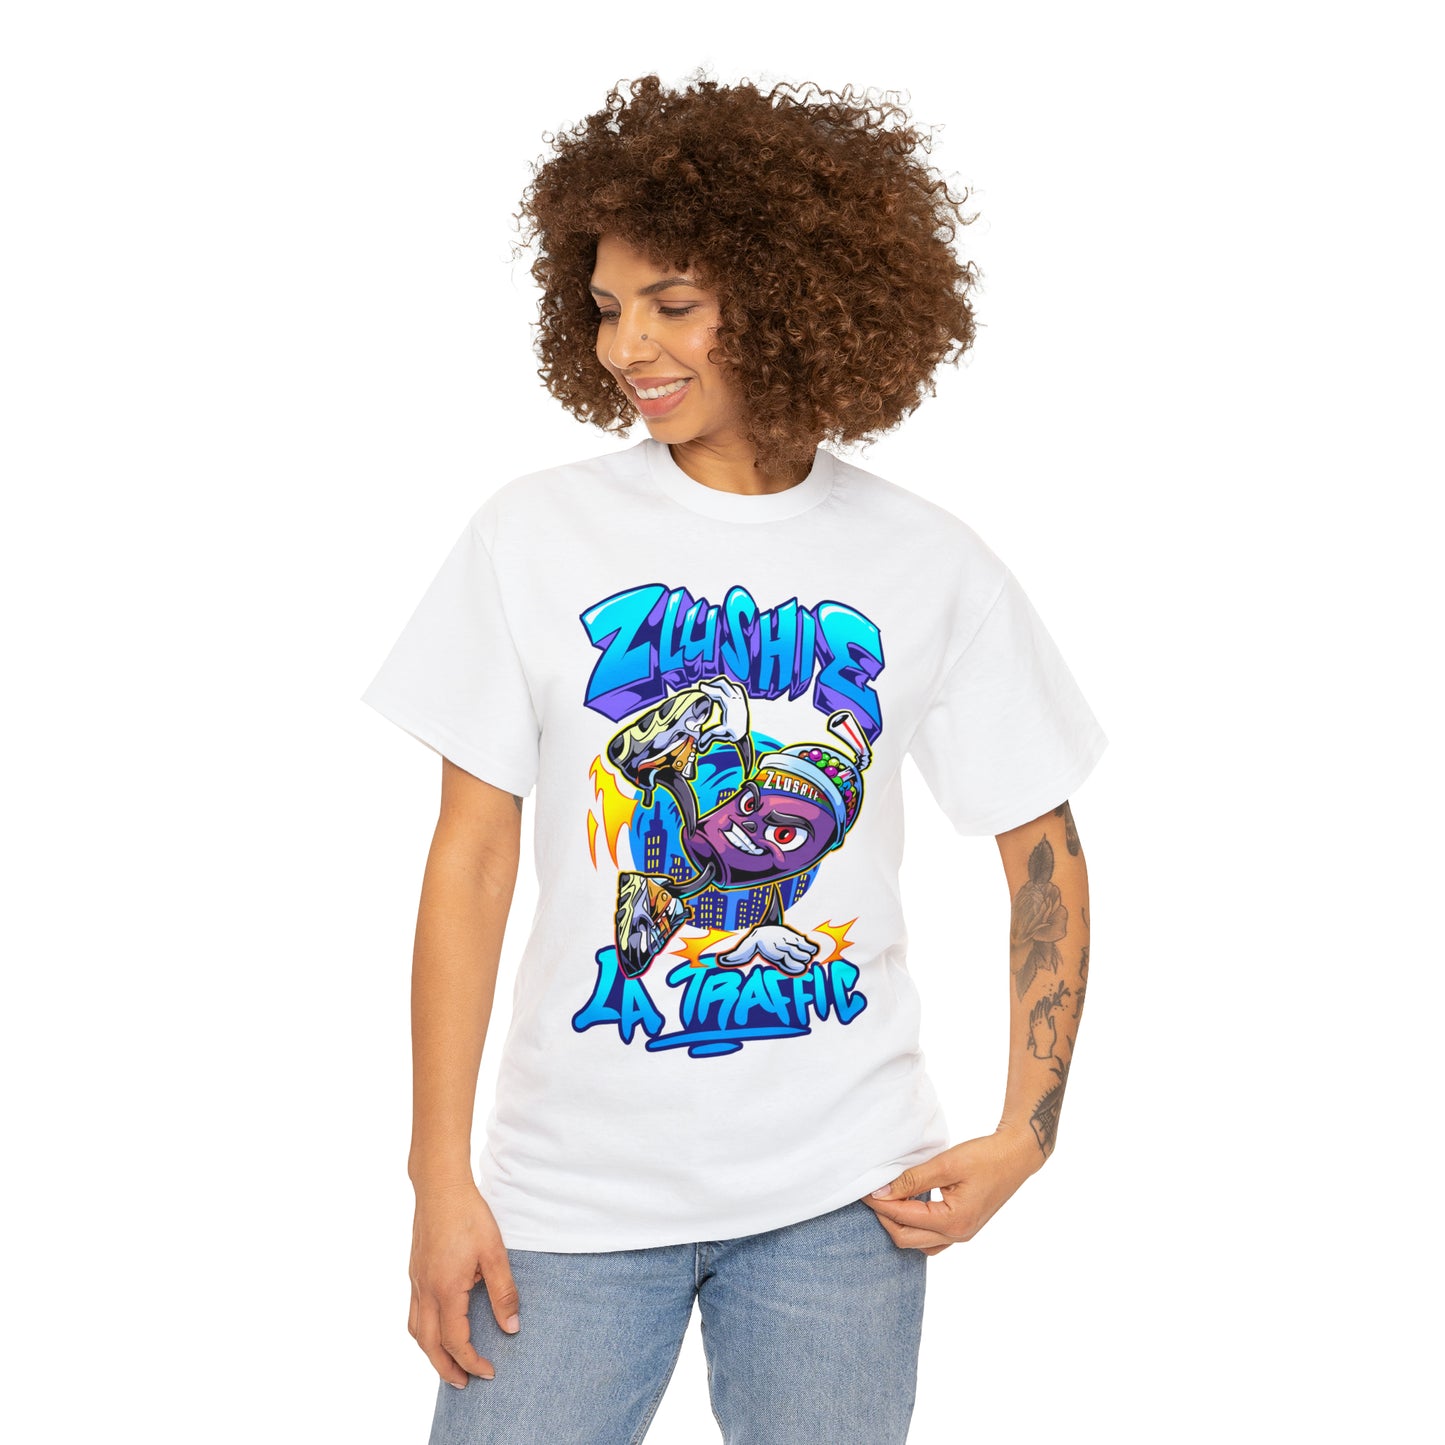 Zlushie Cool RideT-Shirt